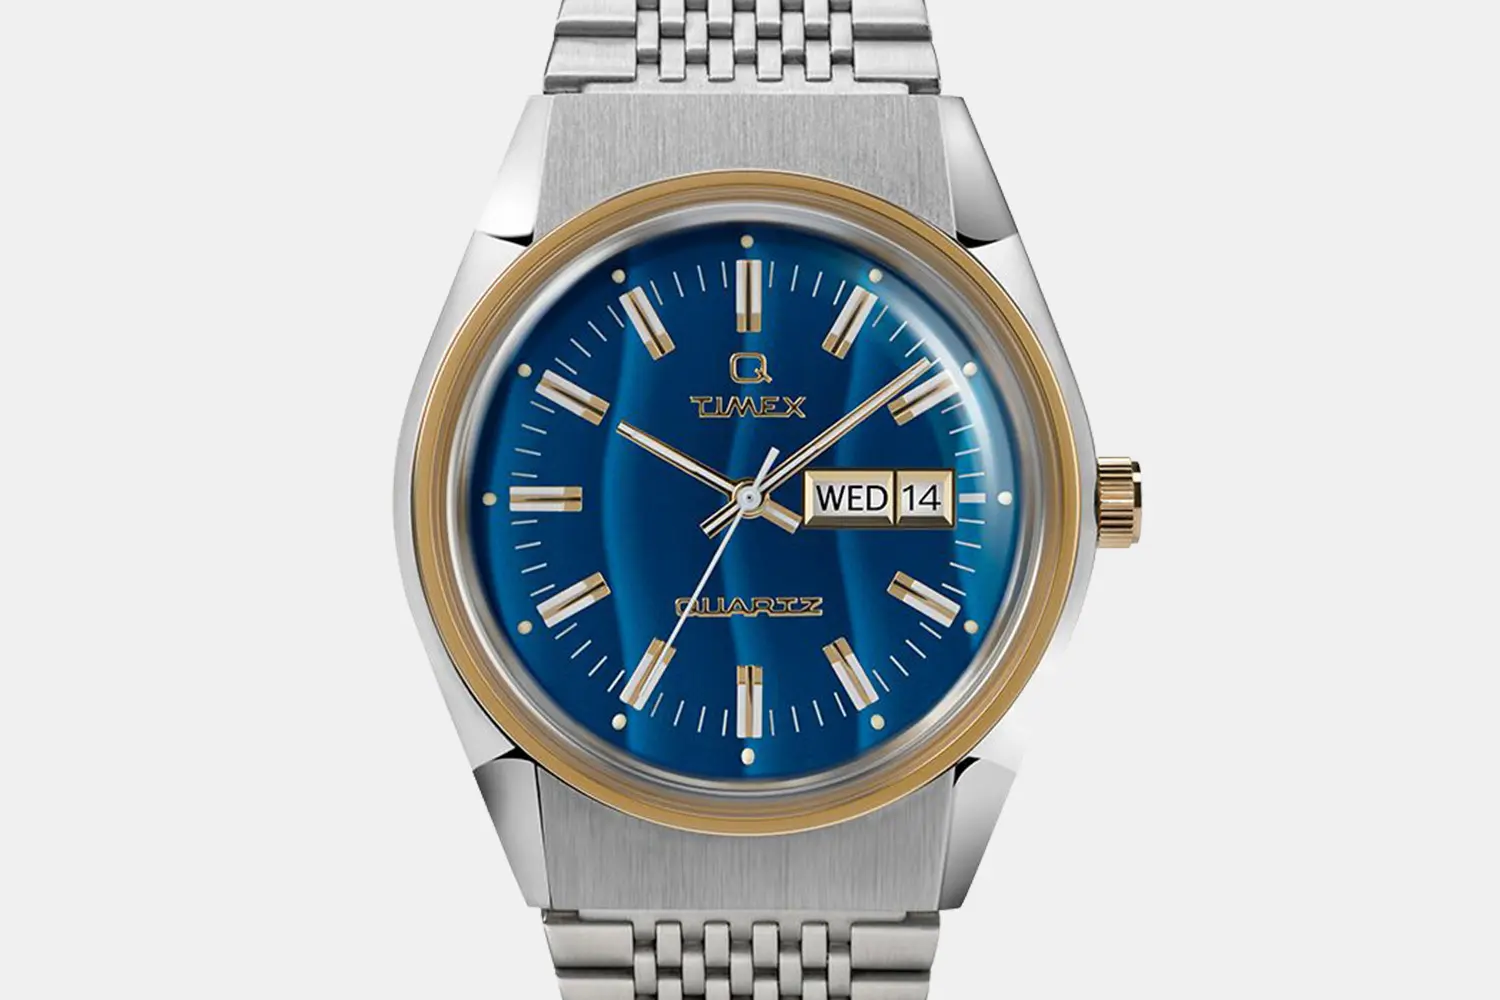 12 great watches under £300